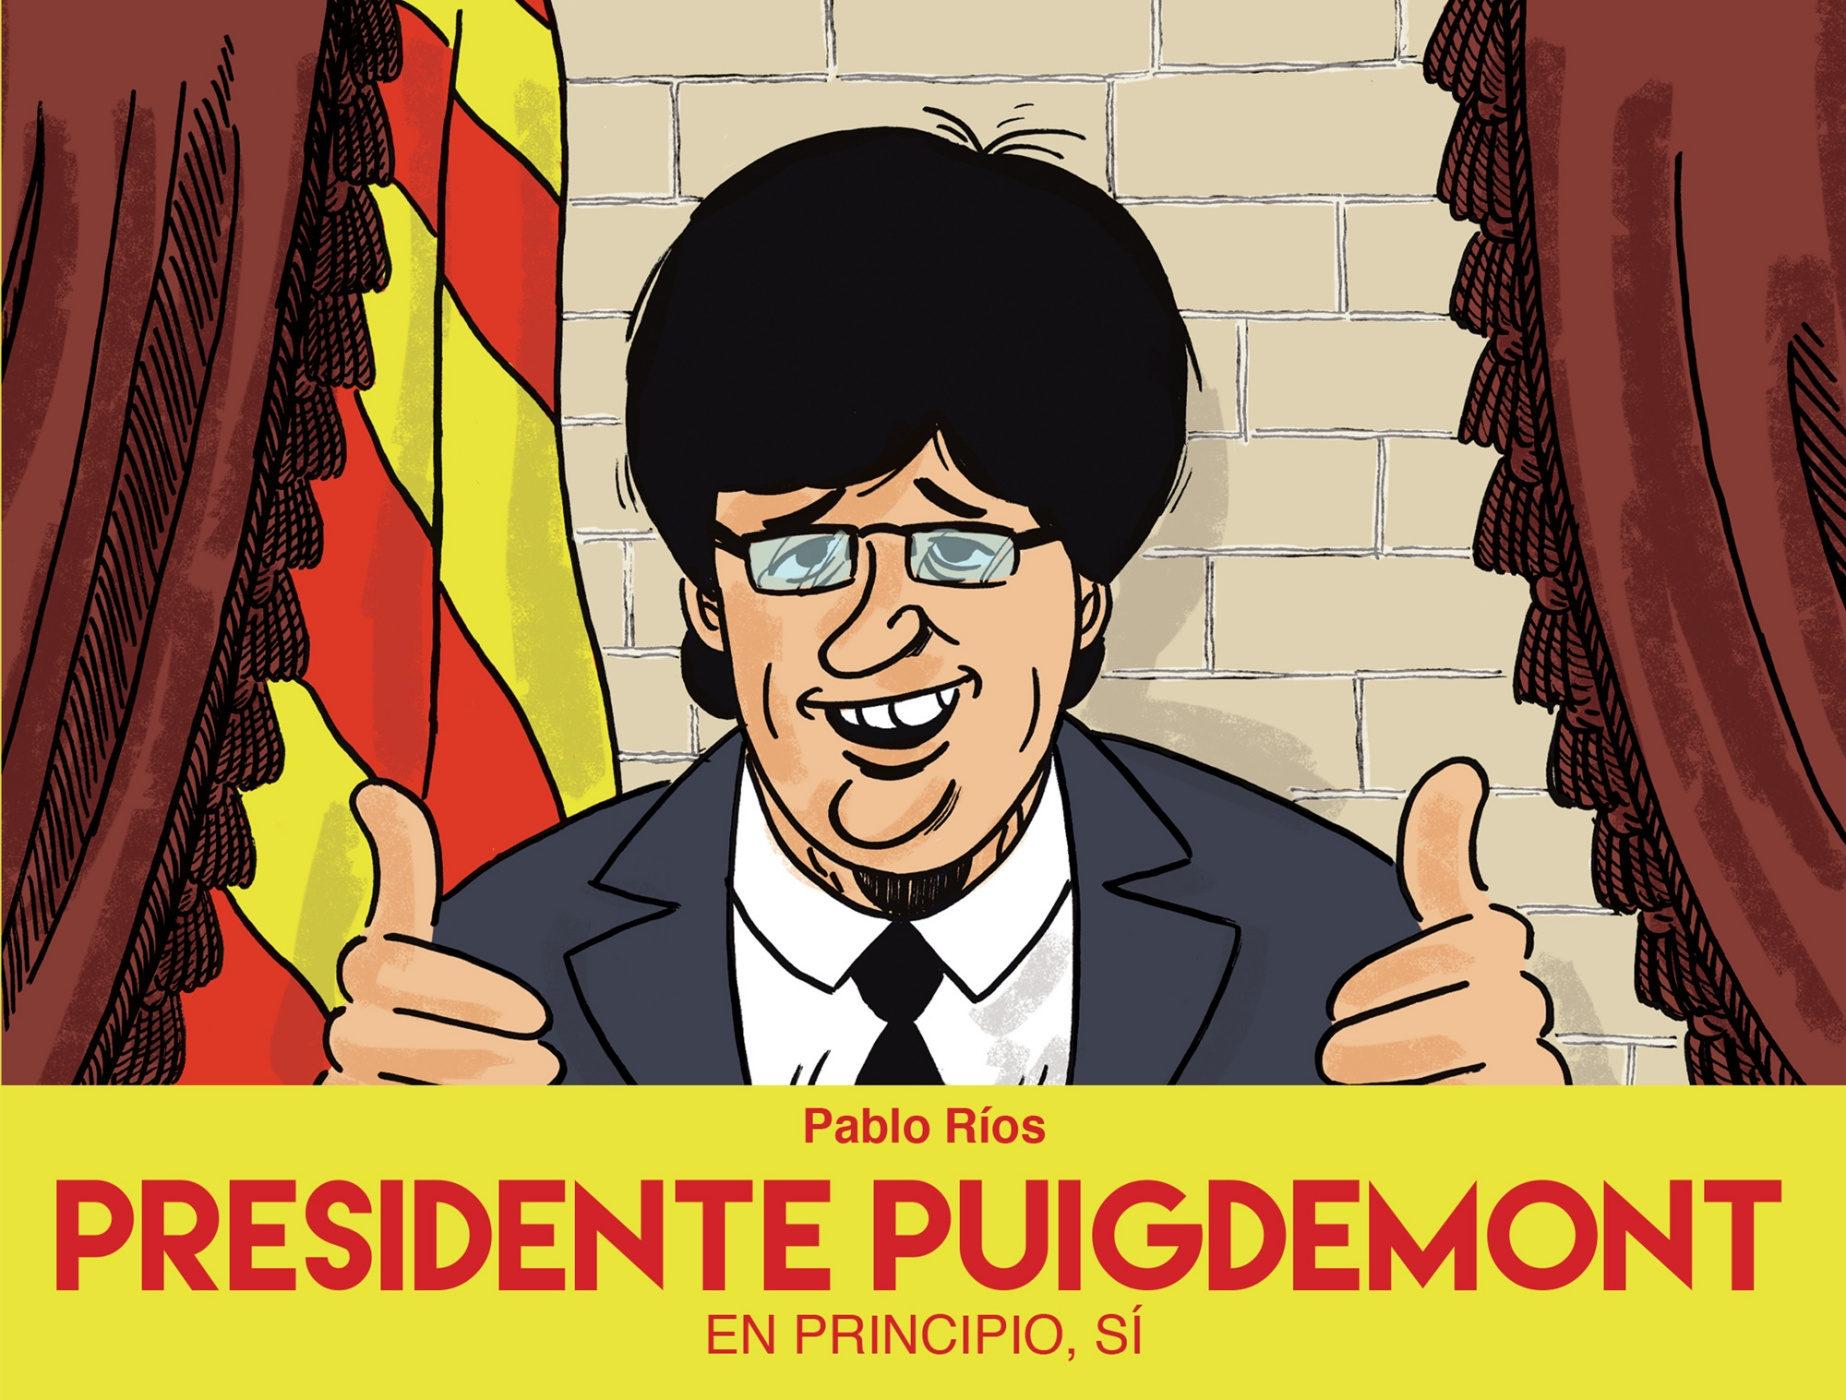 Presidente Puigdemont "En principio, sí"